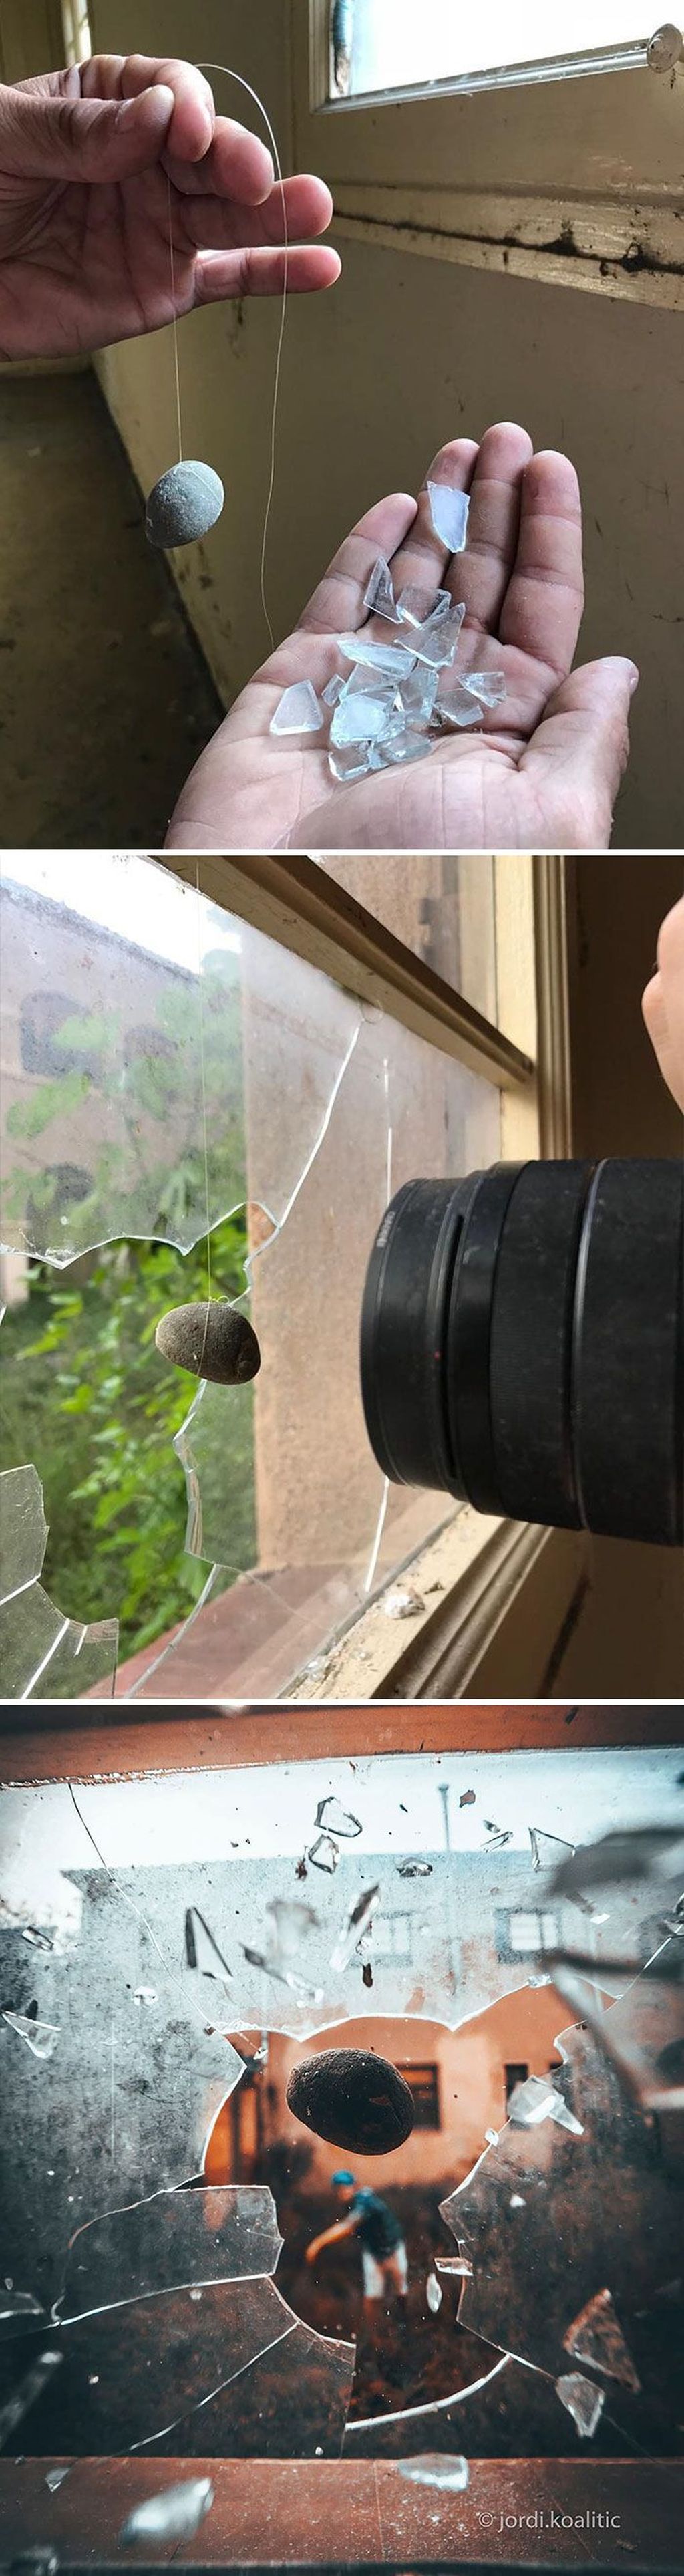 Trik pecah jendela. Foto: instagram.com/jordi.koalitic